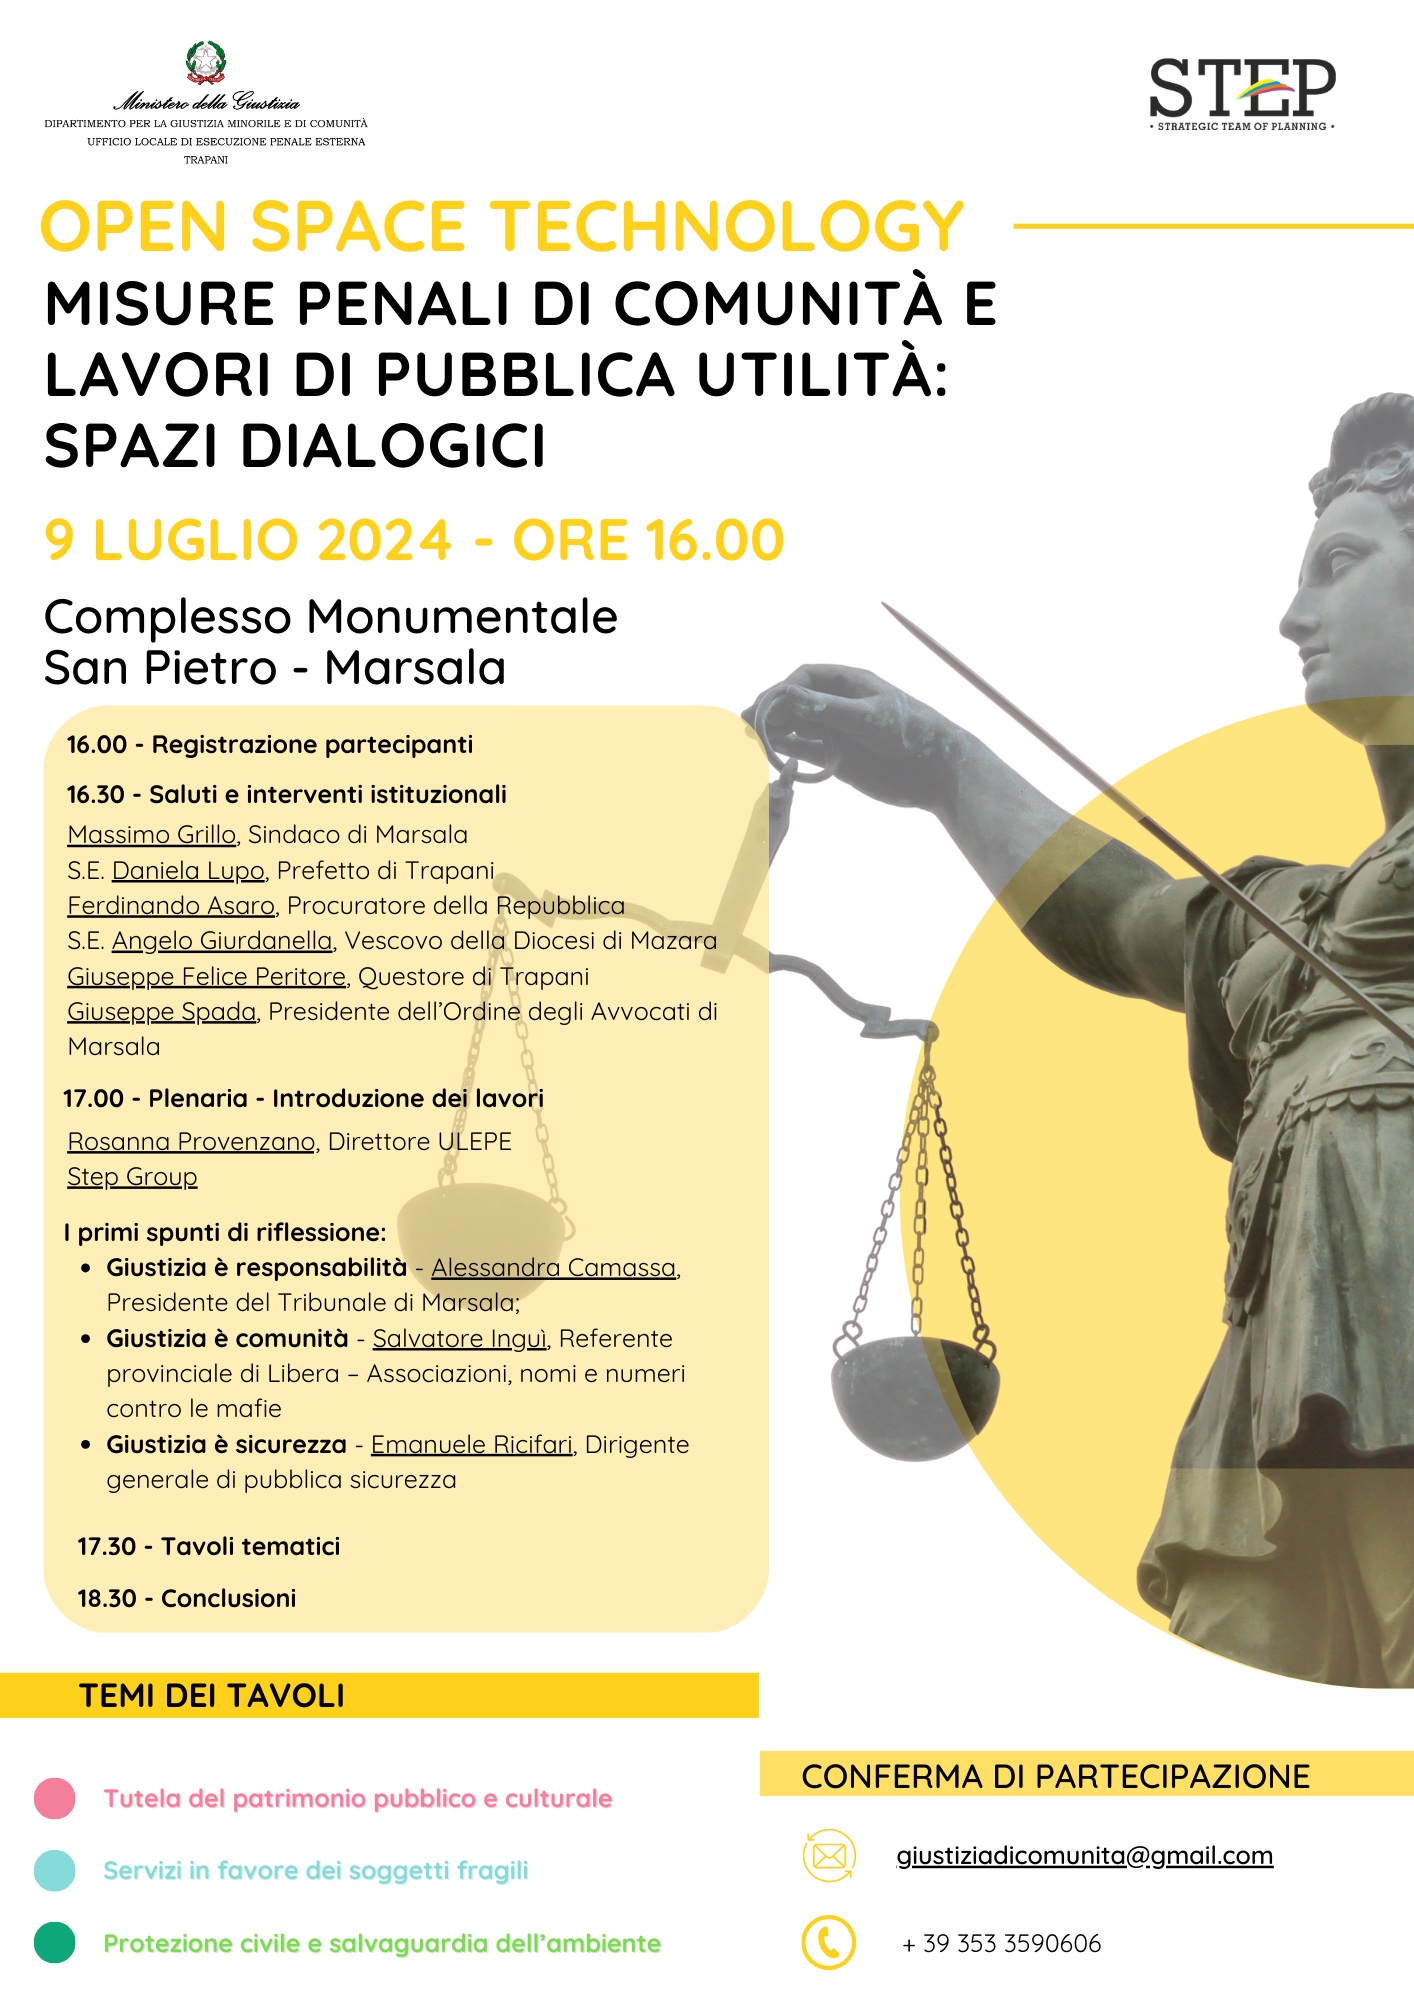 Misure penali di comunità e lavori di pubblica utilità: un evento partecipativo al Complesso San Pietro di Marsala